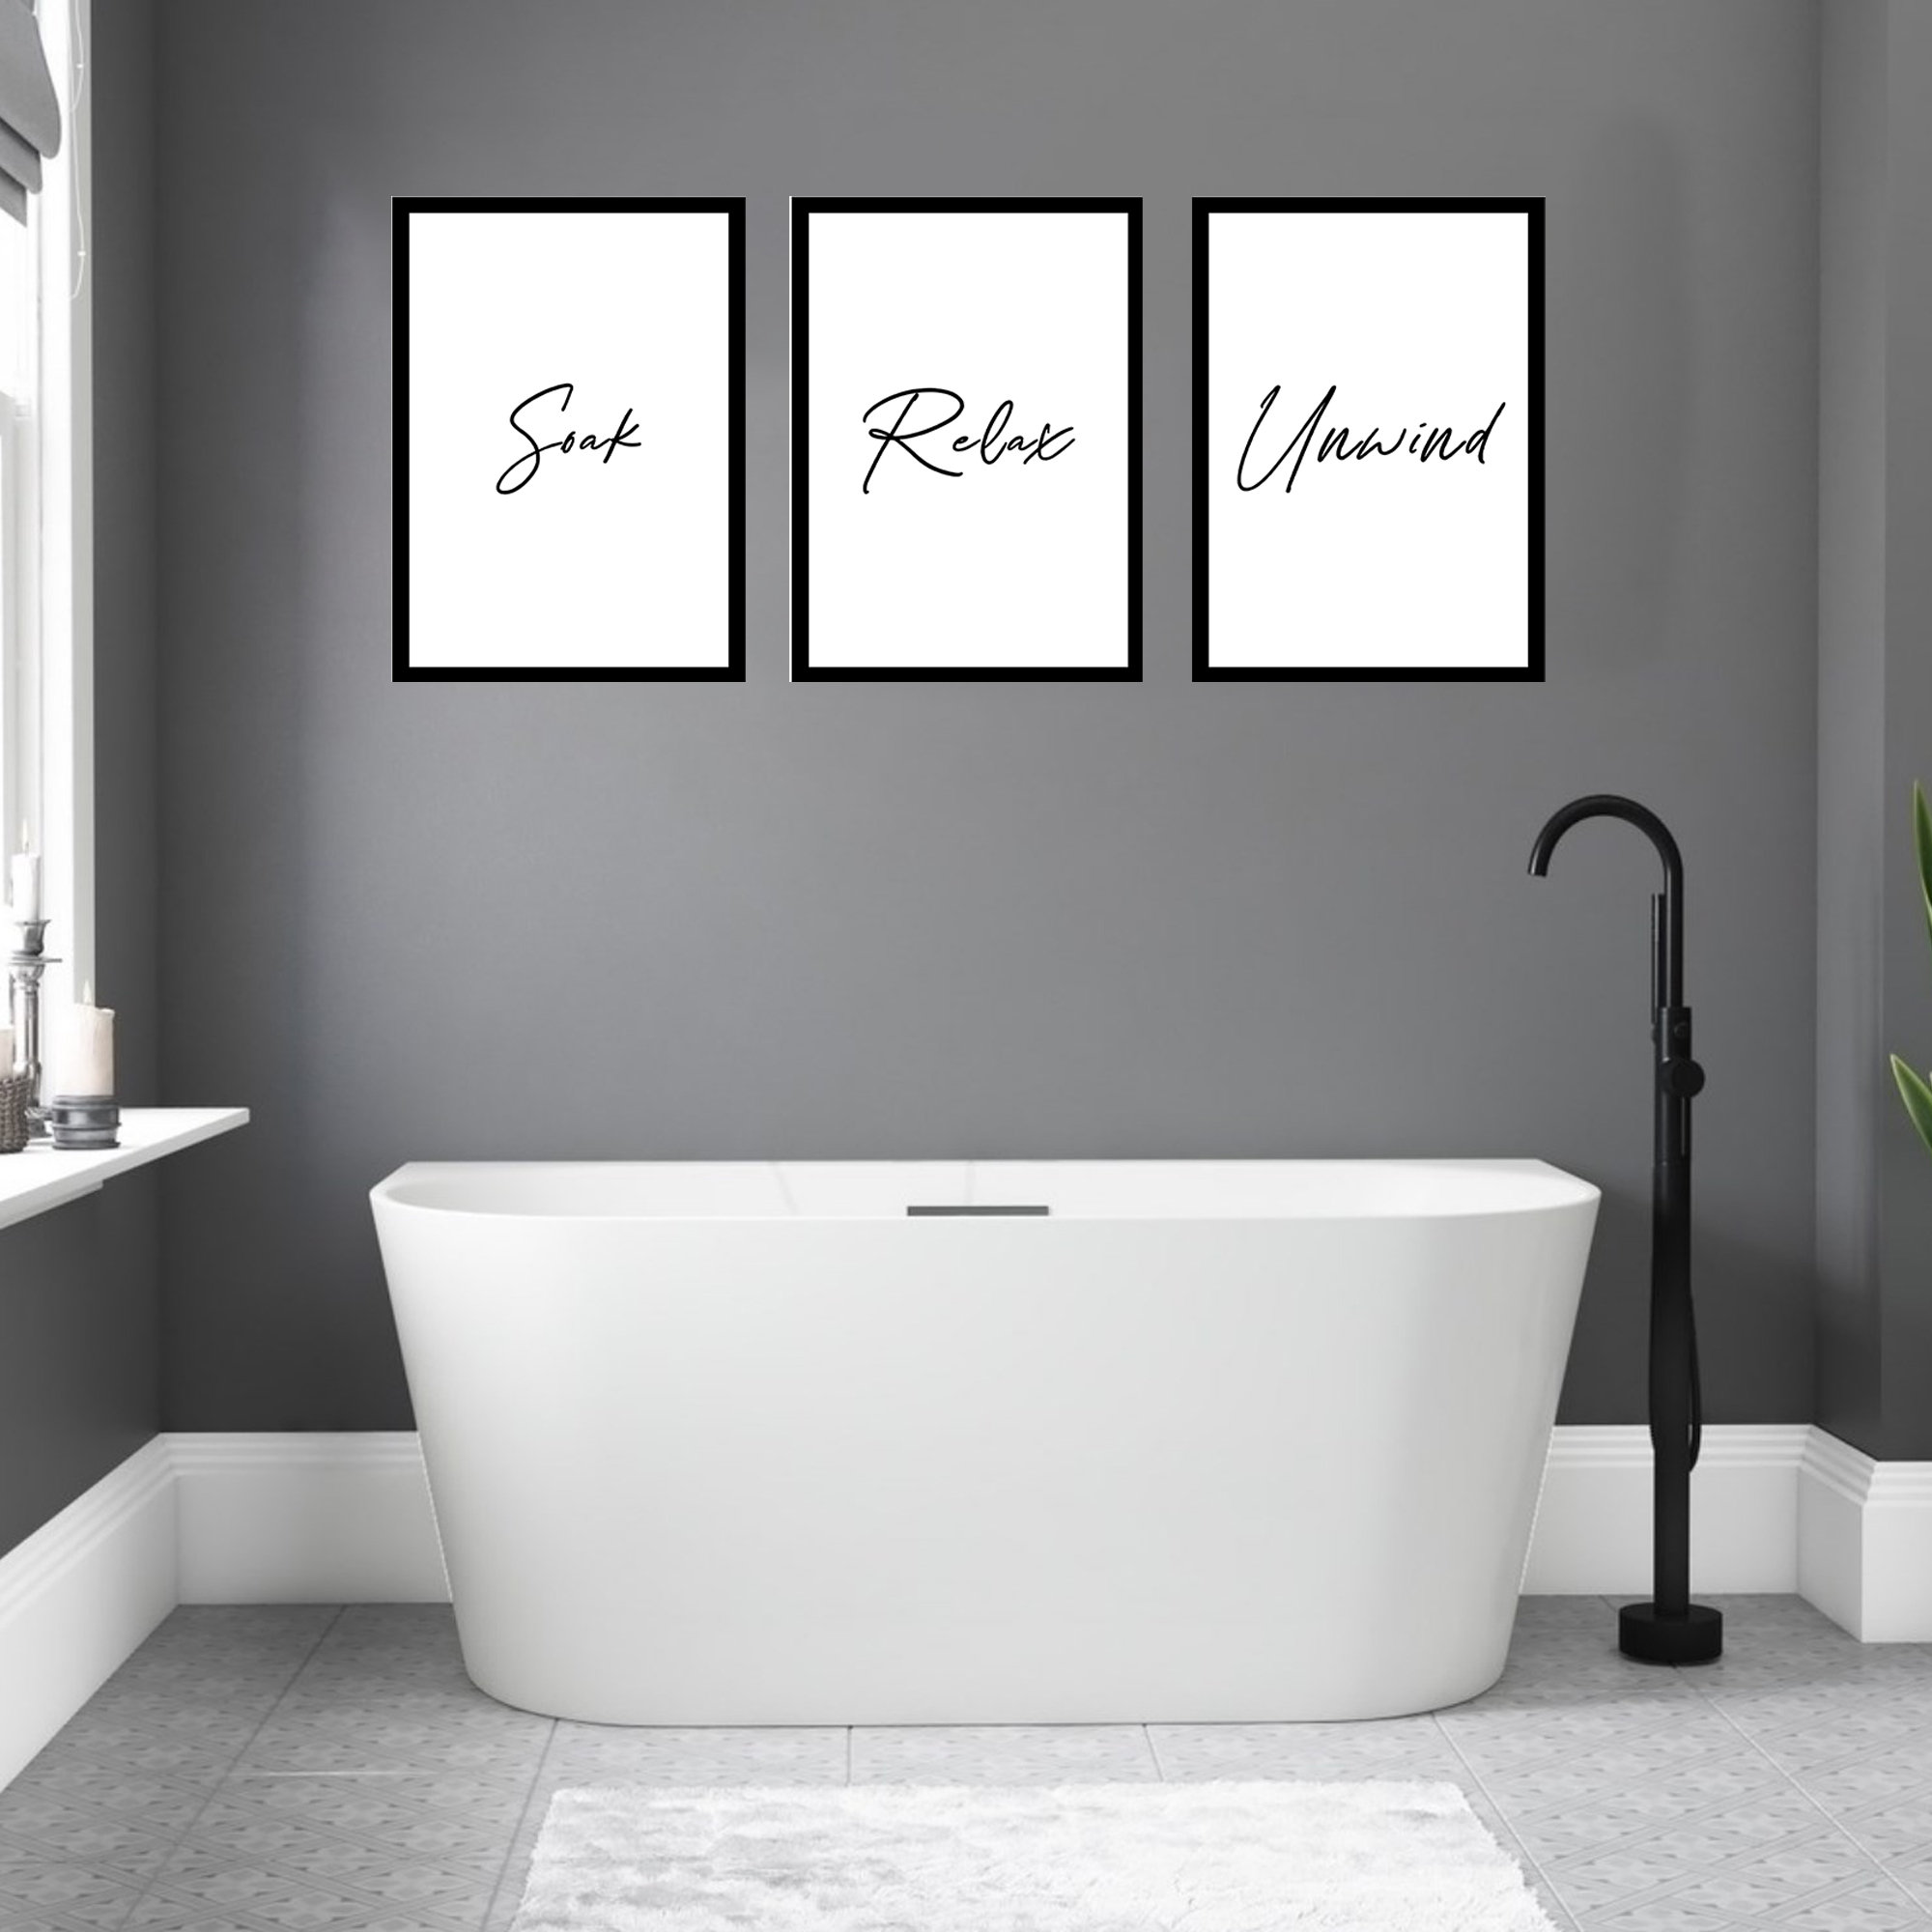 Impresión de arte de la pared del baño Conjunto de 3 | Etsy